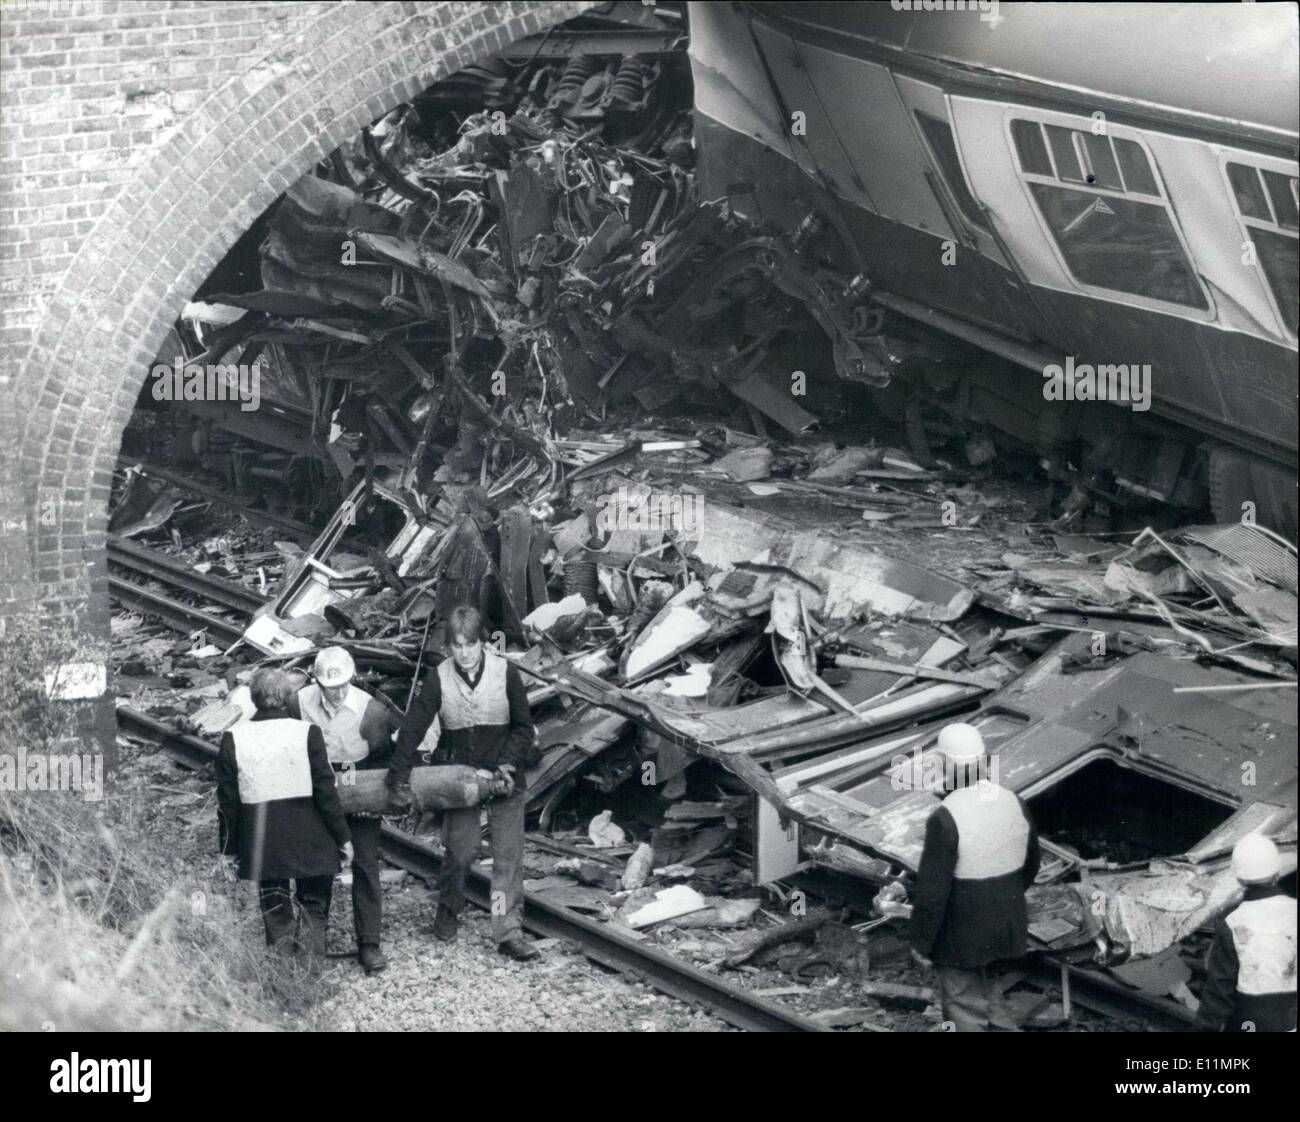 Il 12 Dic. 1978 - Quattro muoiono in treno Brigthon crash: quattro persone morirono quando due treni si è schiantato sul Londra a Brighton la linea la scorsa notte. Sette persone sono state gravemente ferite. La 9.40 Victoria a Littlehampton treno arò nel retro di un 9.50 Victoria a Brighton in treno, arrestato in segnali a causa di una relazione di una donna sulla linea ferroviaria presso la stazione di Brighton. Il crash si è verificato in un 40ft taglio in dolce collina, Ponte a 3 miglia da Brighton. Un autobus è stato scaraventato 30 piedi in aria e si è schiantato su un altro carrello. Altre tre vetture sono state schiacciate quasi piatta sotto il ponte Foto Stock